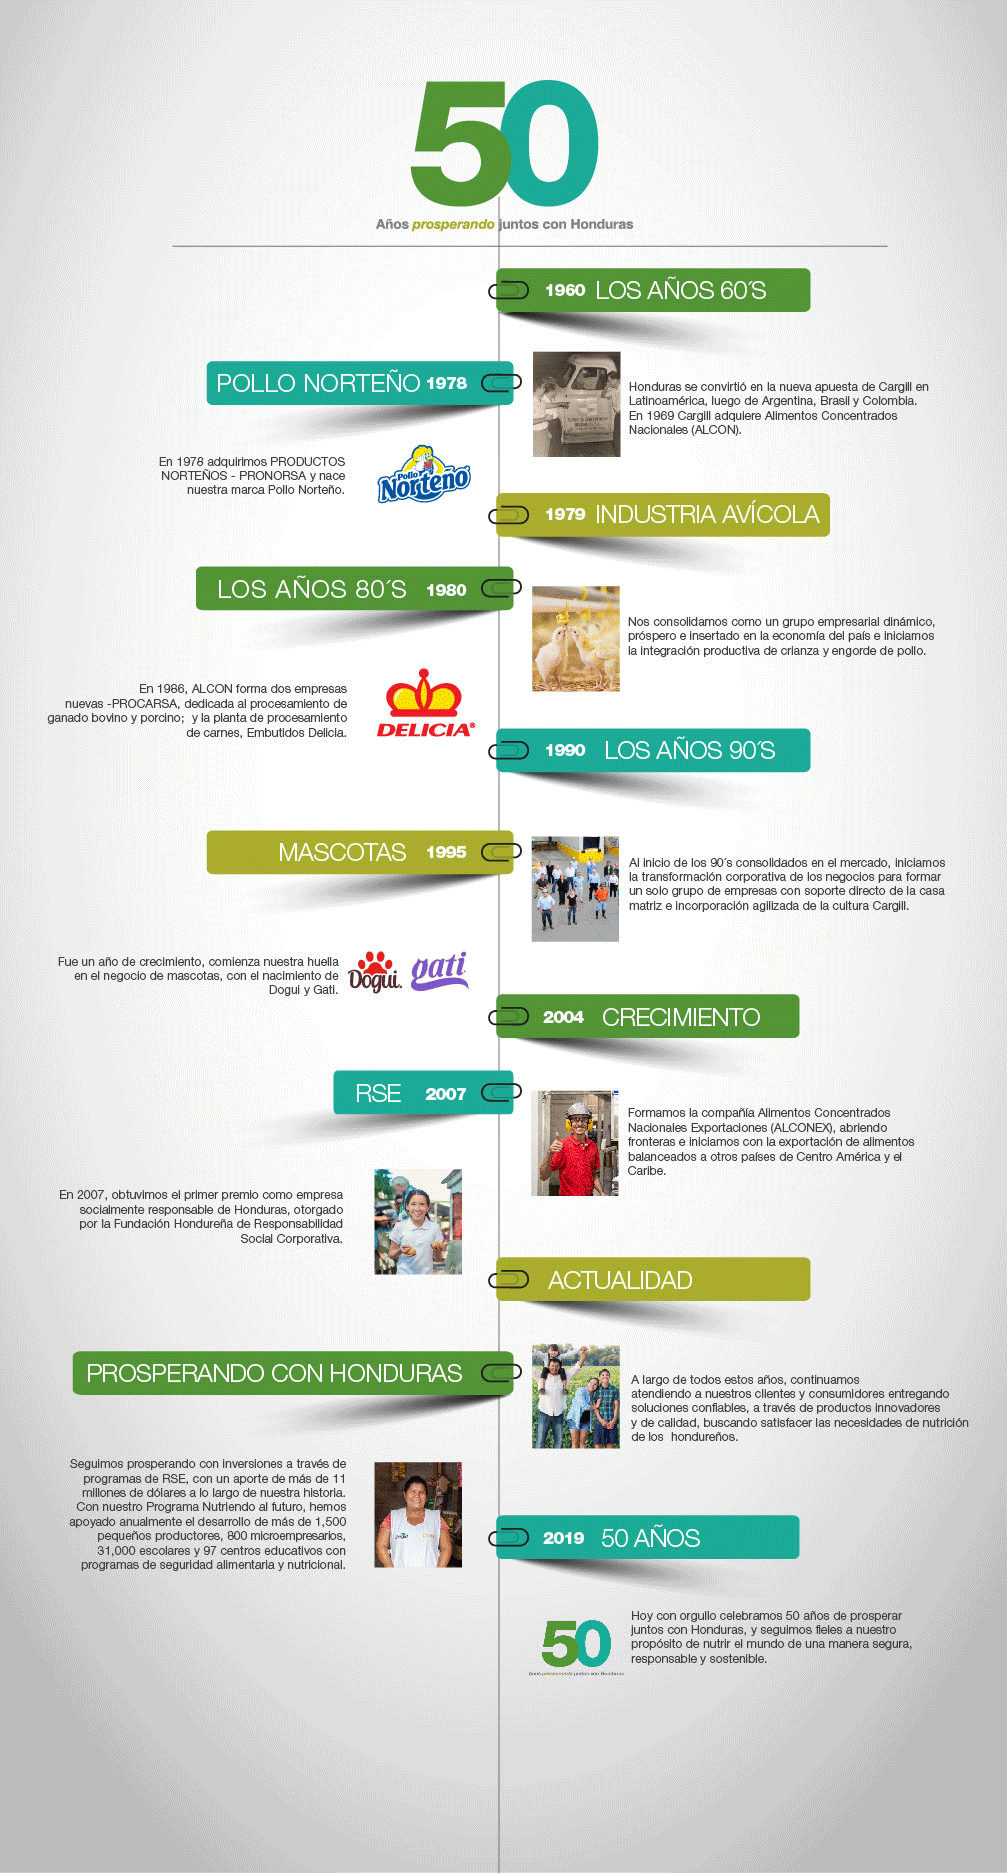 Cargill 50 Años Timeline